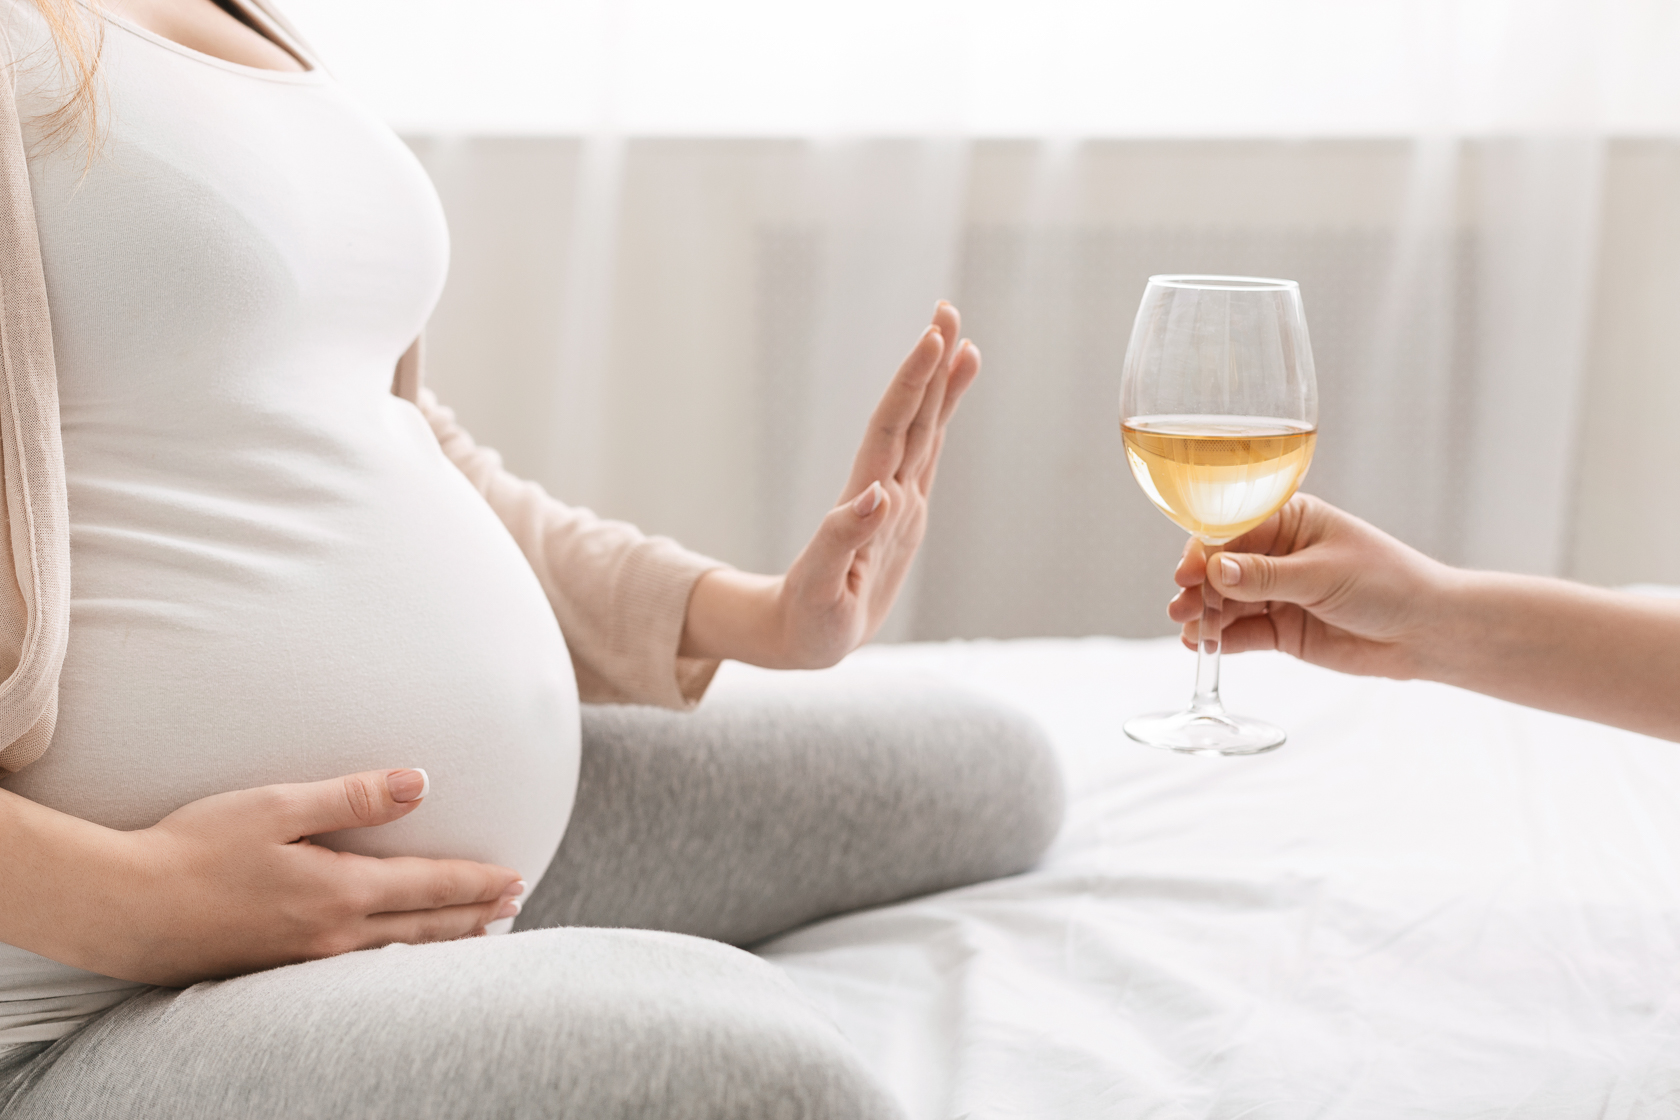 Можно квас беременным 3 триместр. Алкоголь и беременность. Вредные привычки беременной. Влияние вредных привычек беременной на плод. Береенност и вредфне пивыкми.